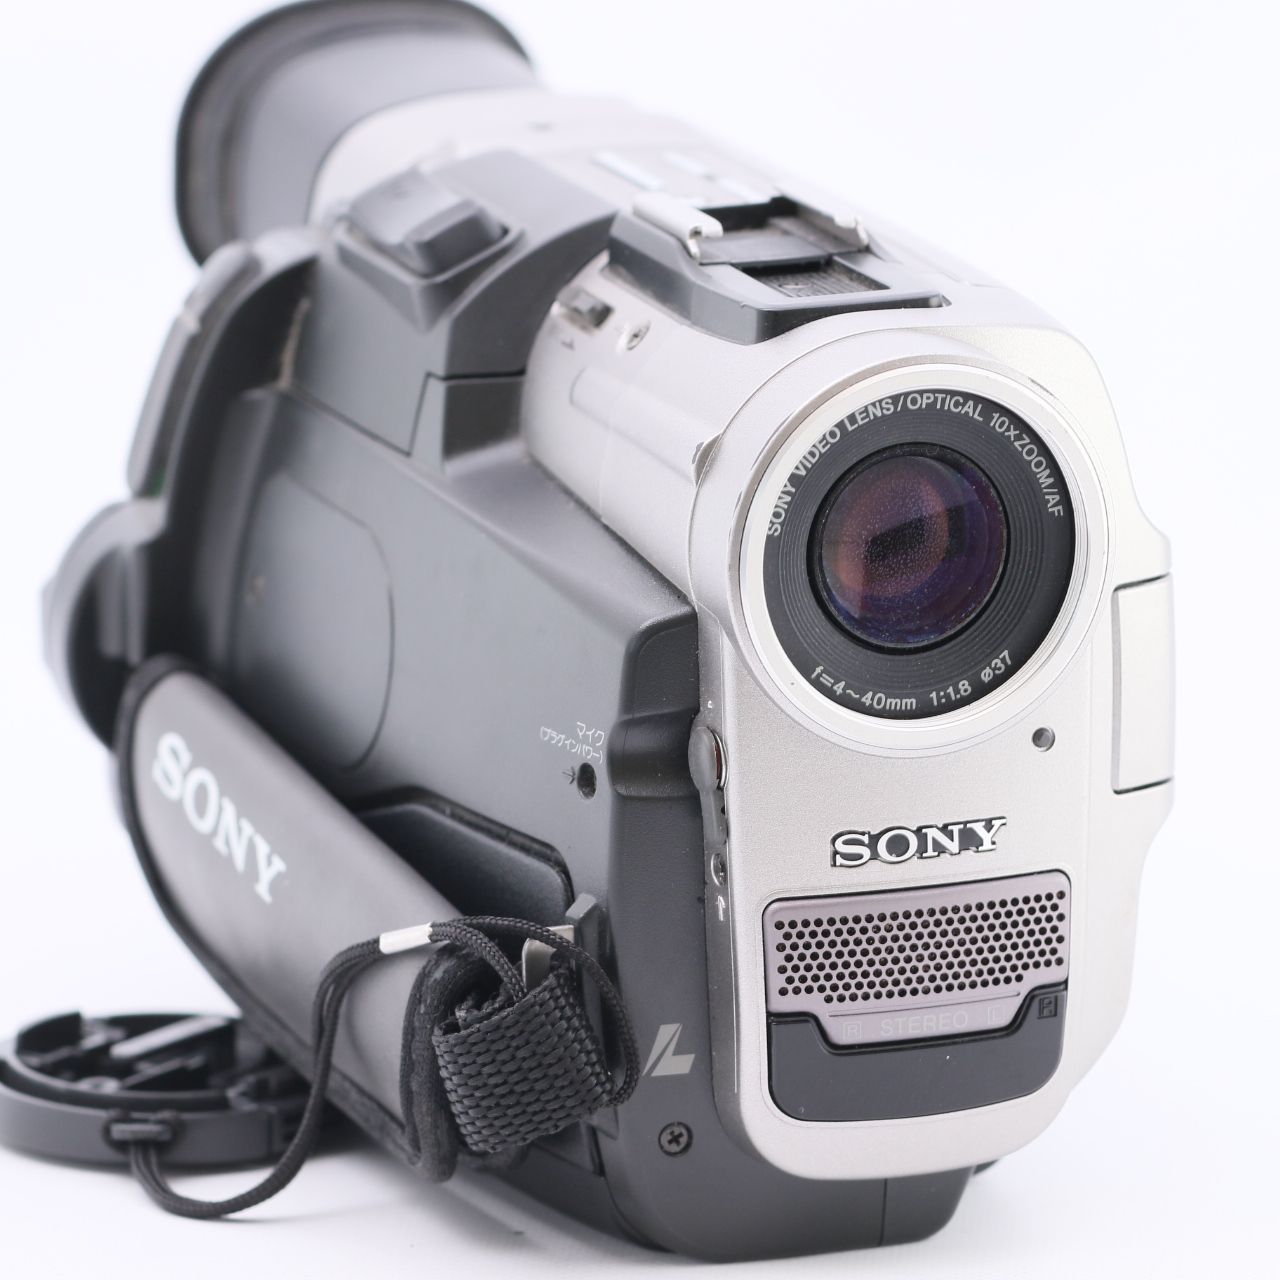 SONY TRV17K デジタルハンディカム - ビデオカメラ